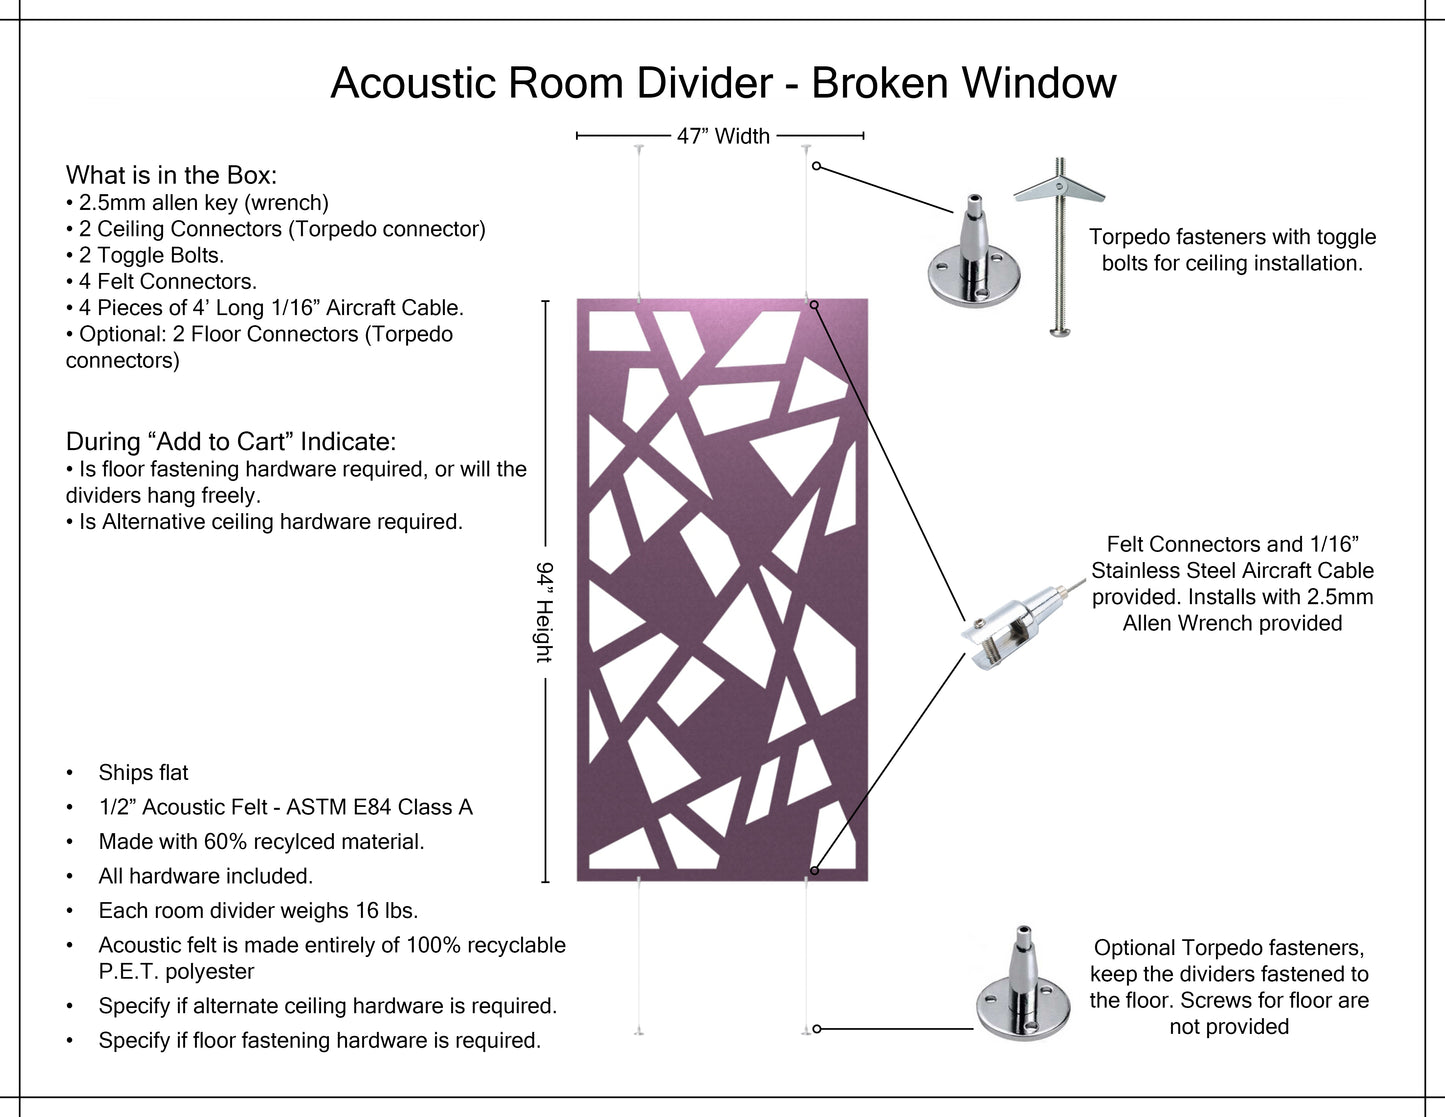 4x8 Acoustic Room Divider - Broken Window